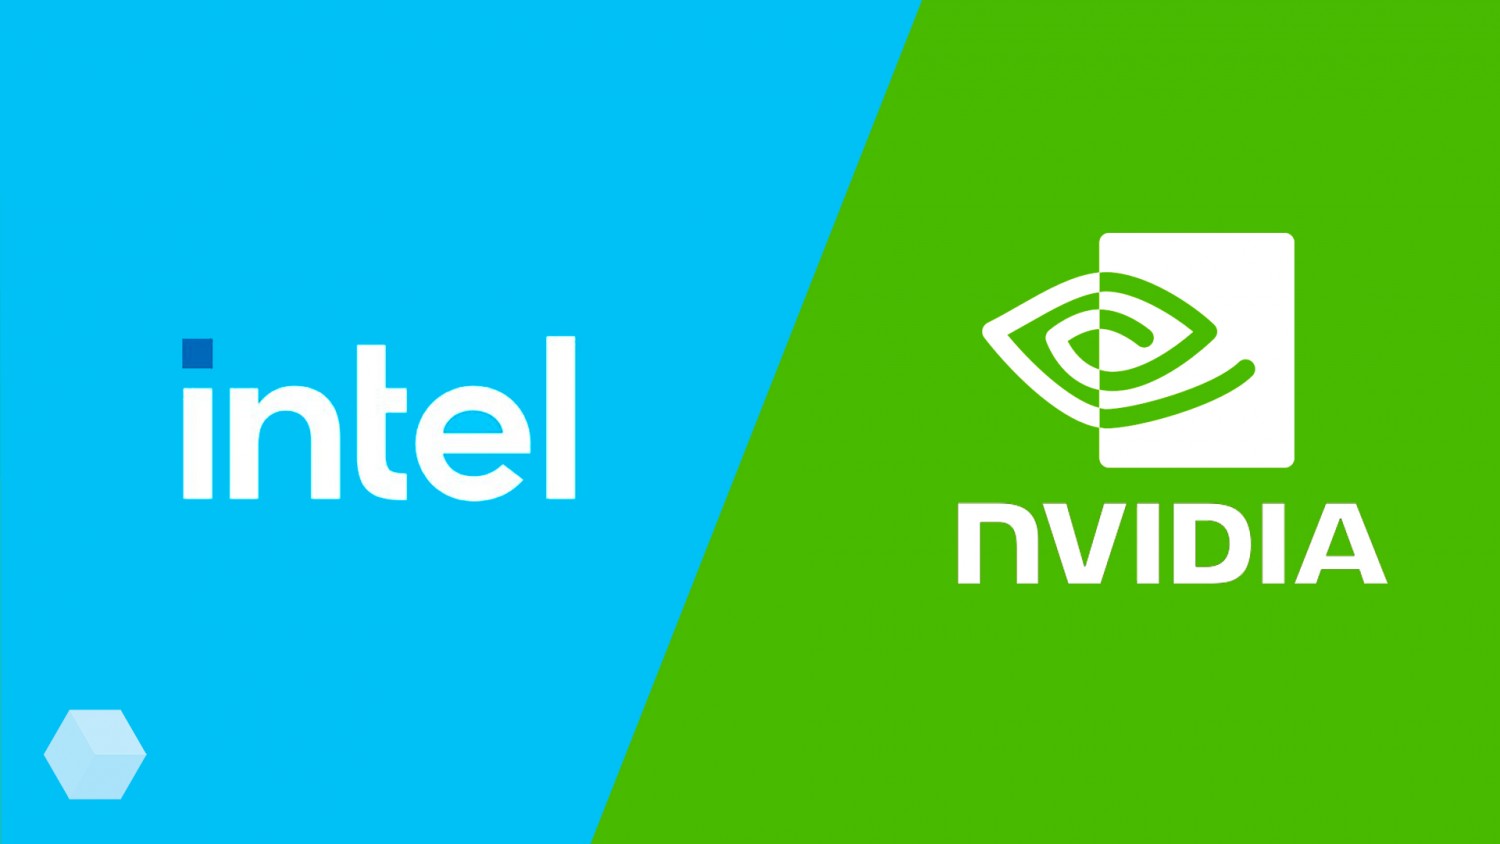 Железные новинки Intel и NVIDIA. Что интересного?